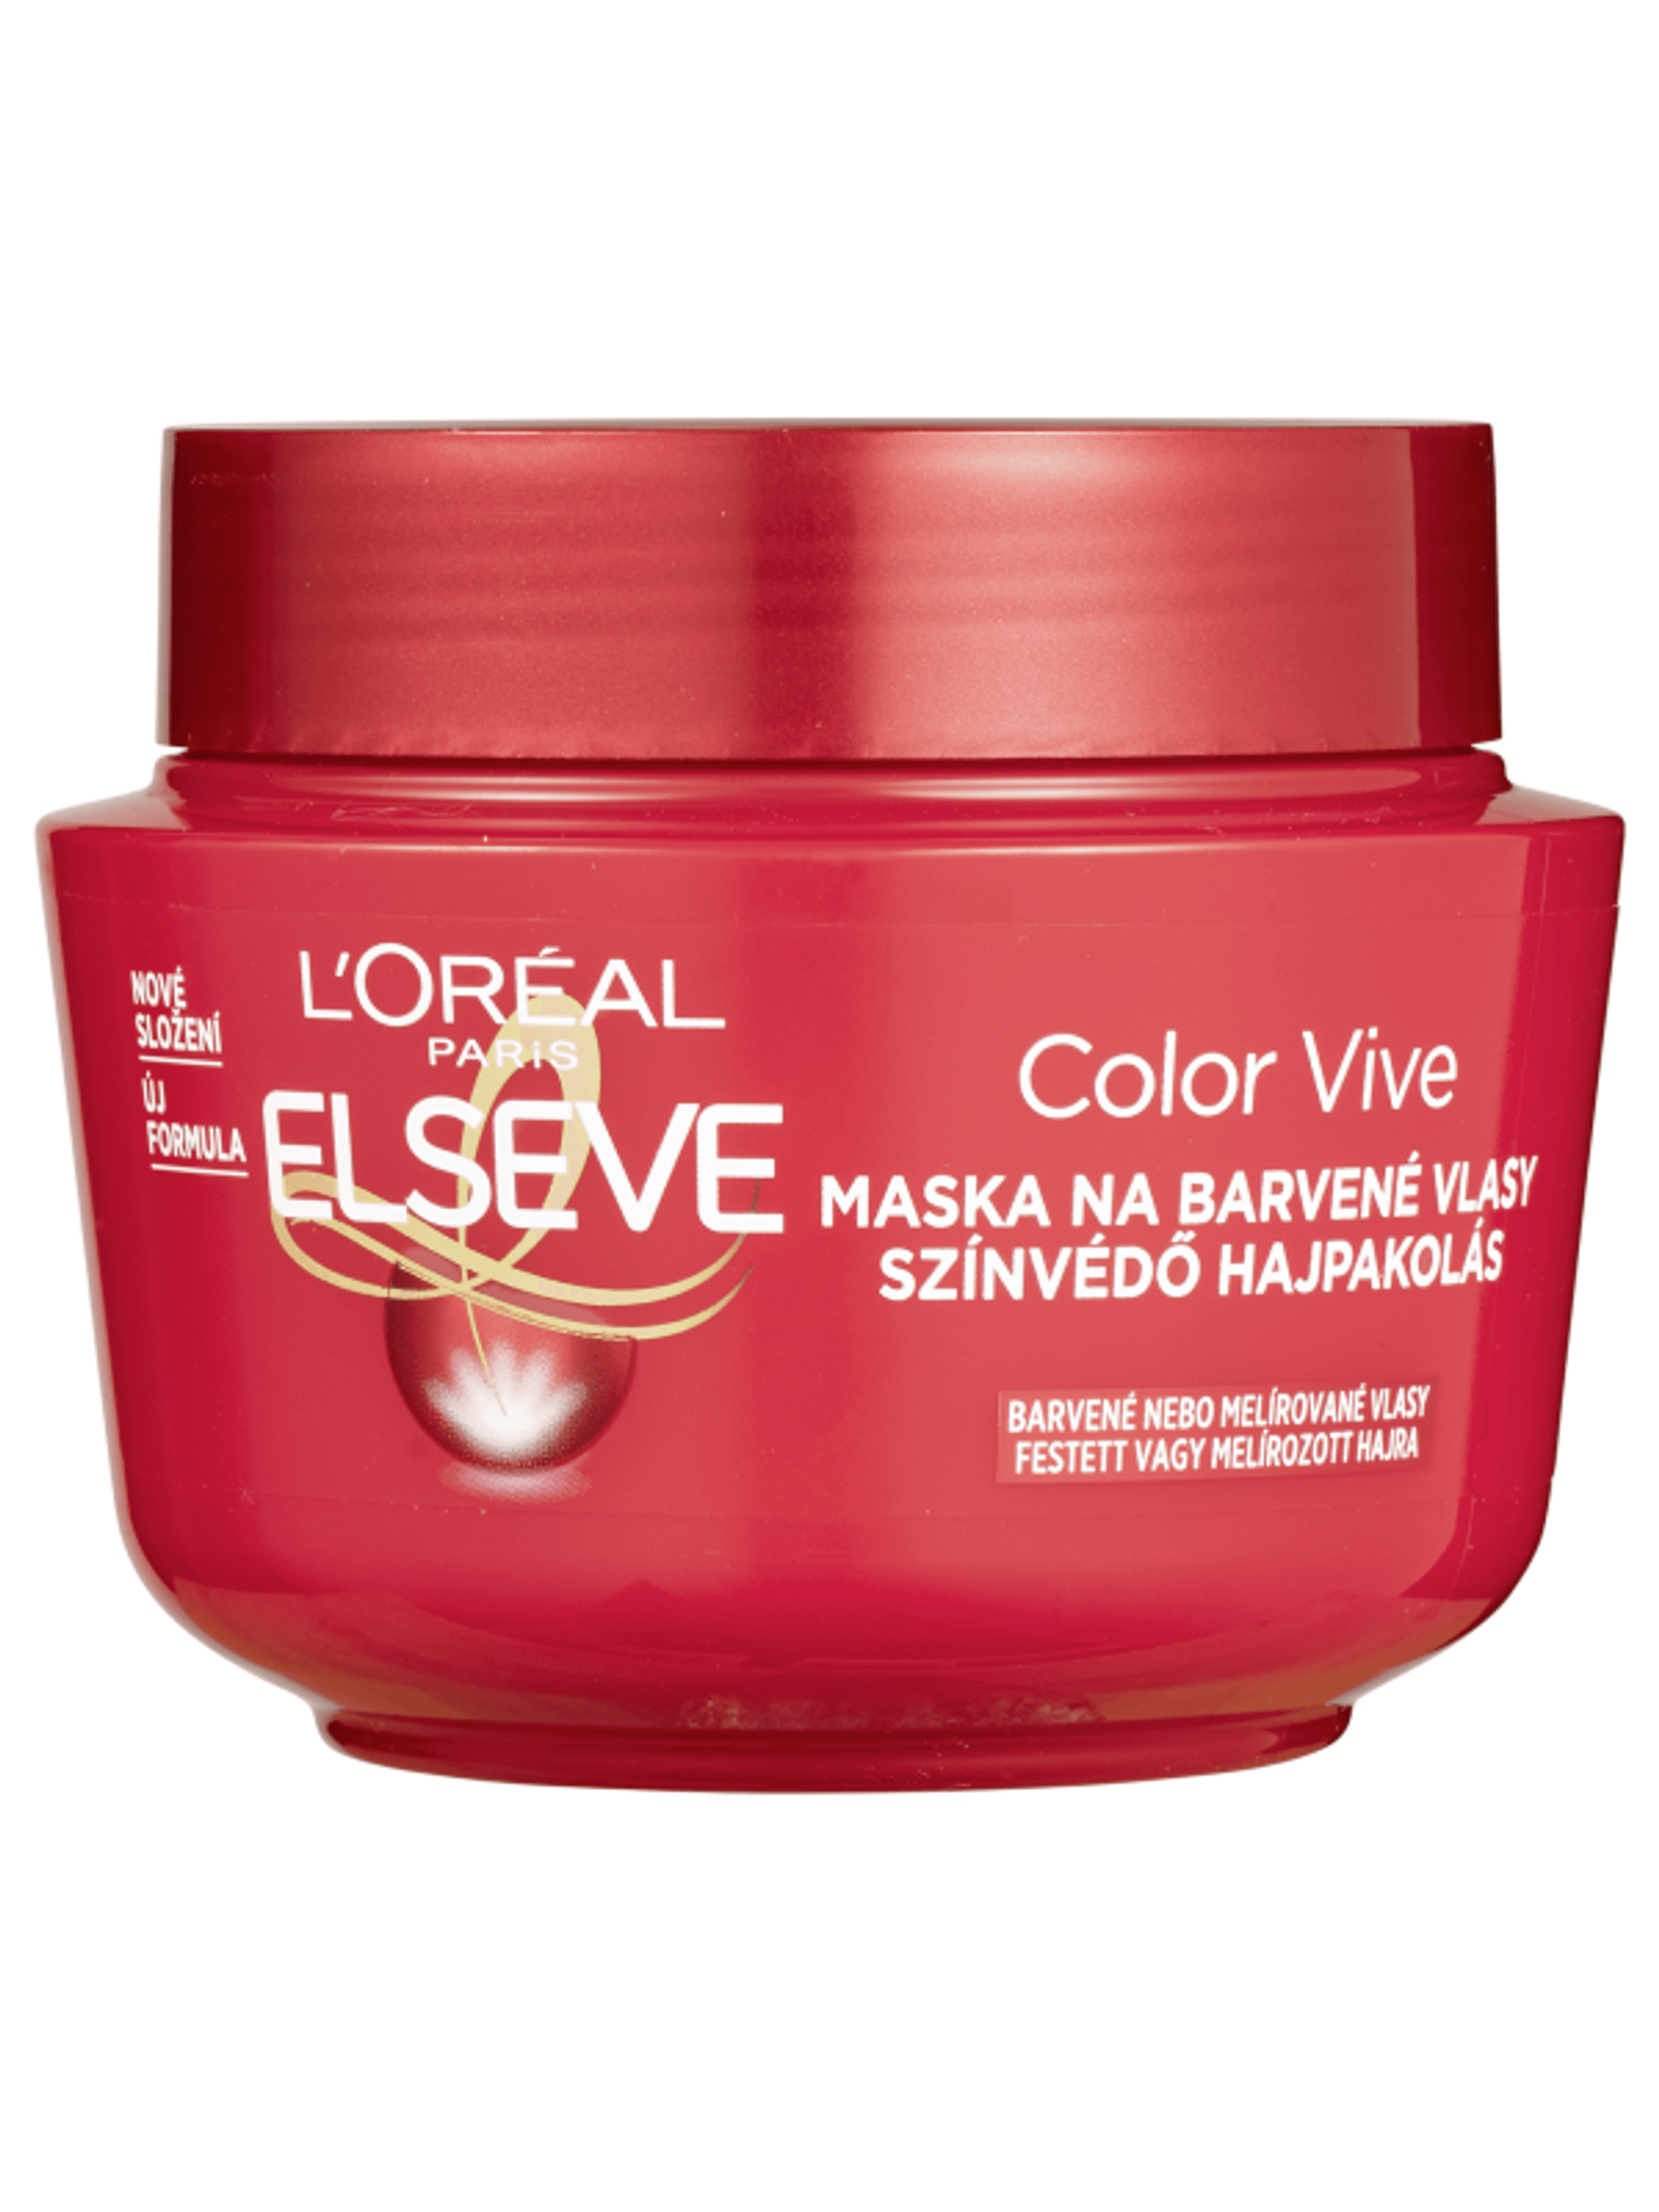 L'Oréal Paris Elseve Color-vive színvédő hajpakolás - 300 ml-3